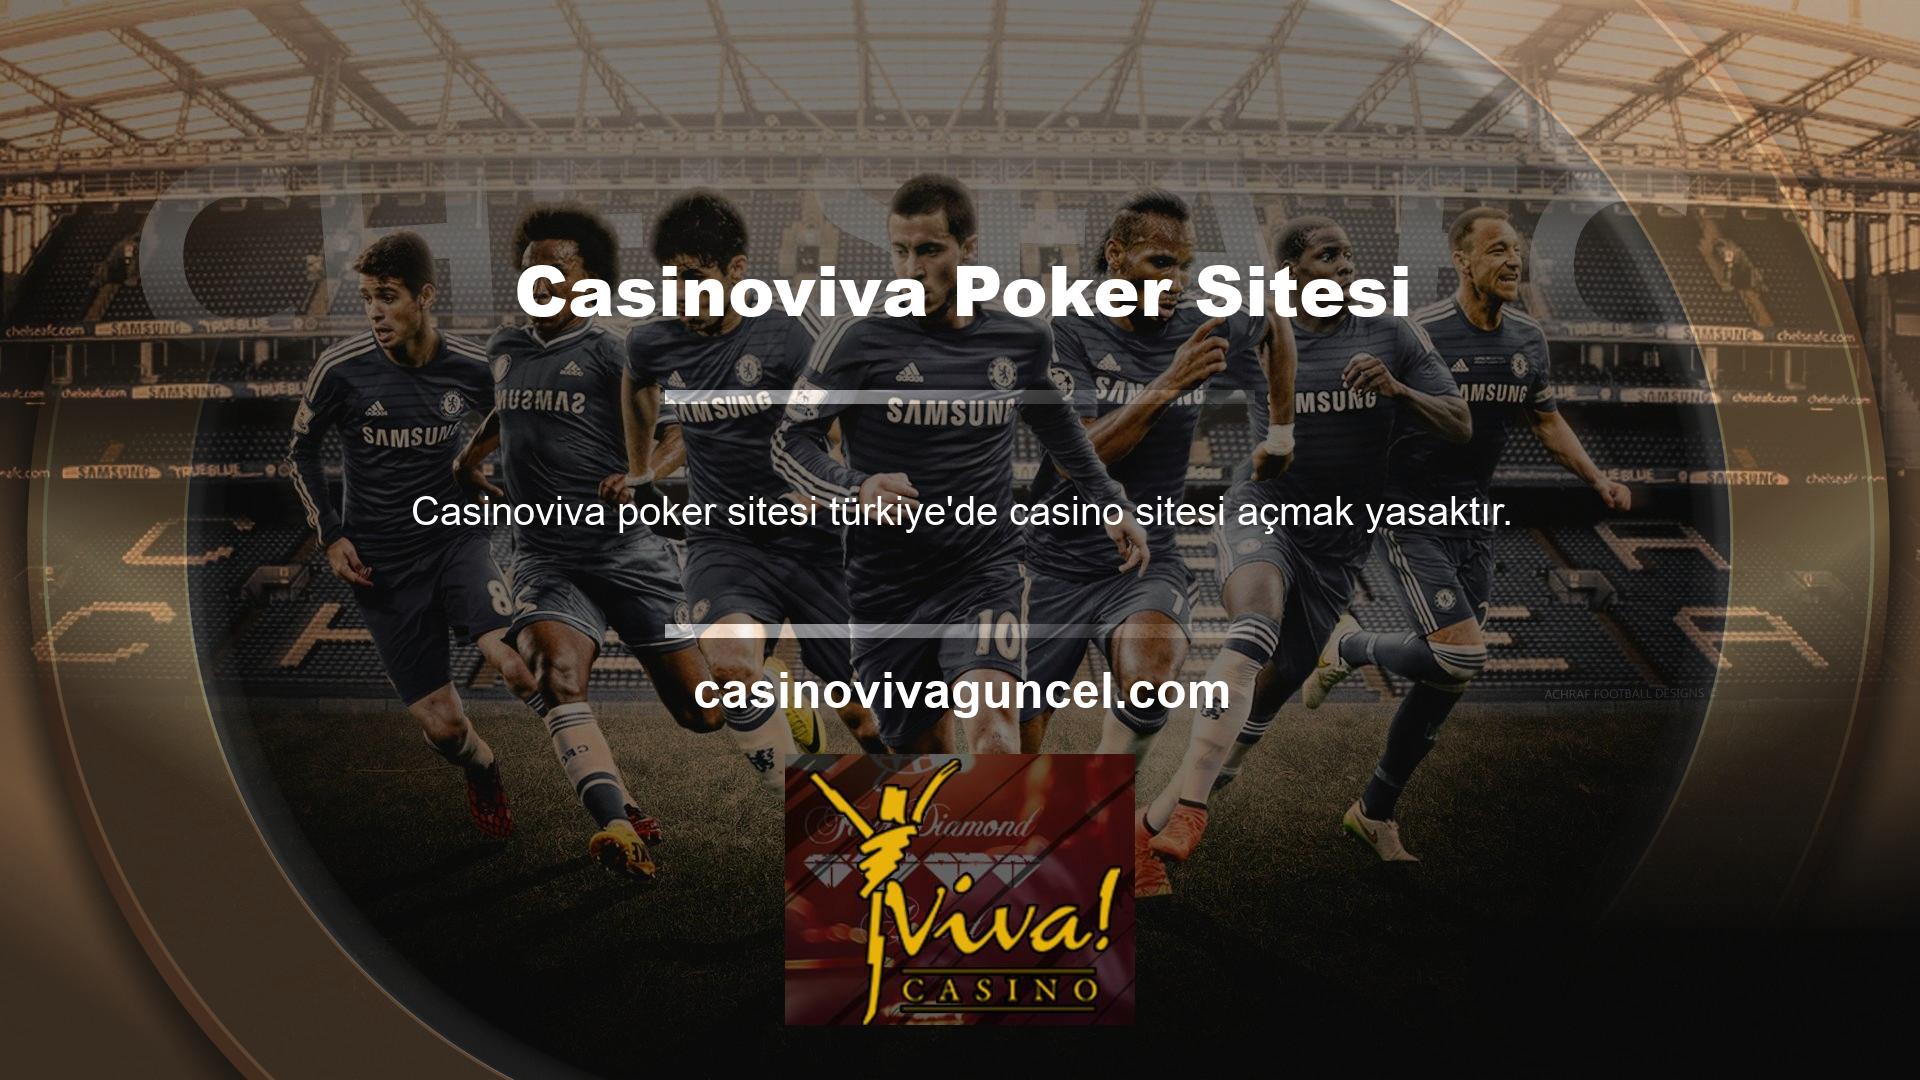 Dolayısıyla sanal ortamda görüntülenen tüm casino siteleri Avrupa'da oluşturulmuş yurt dışı sitelerdir